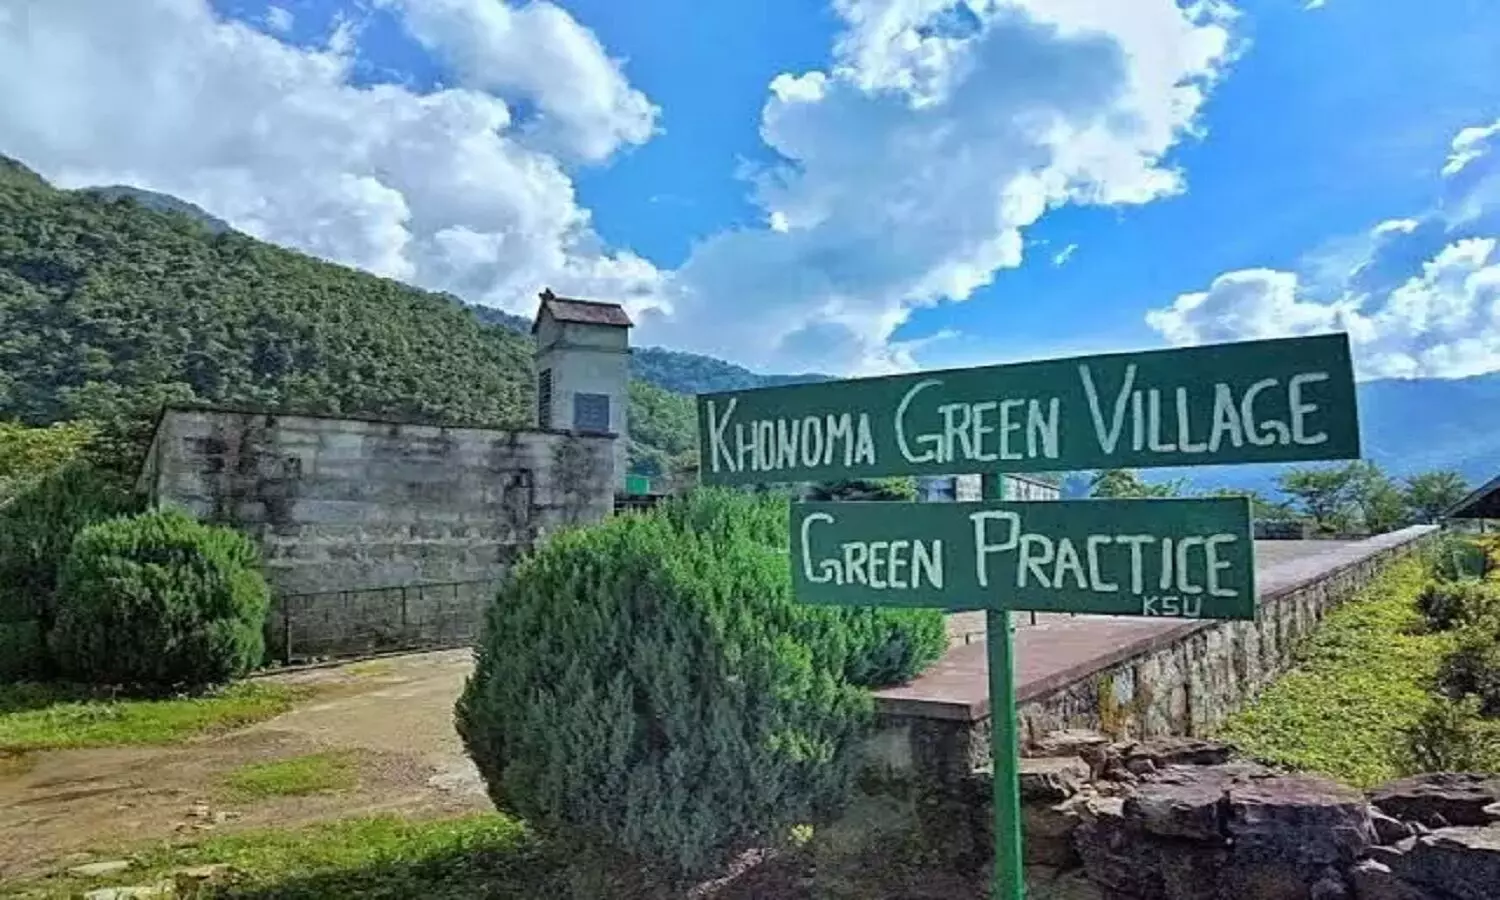 Indias first Green Village: भारत का पहला ग्रीन विलेज खोनोमा जहां कभी पेड़ नहीं काटा जाता